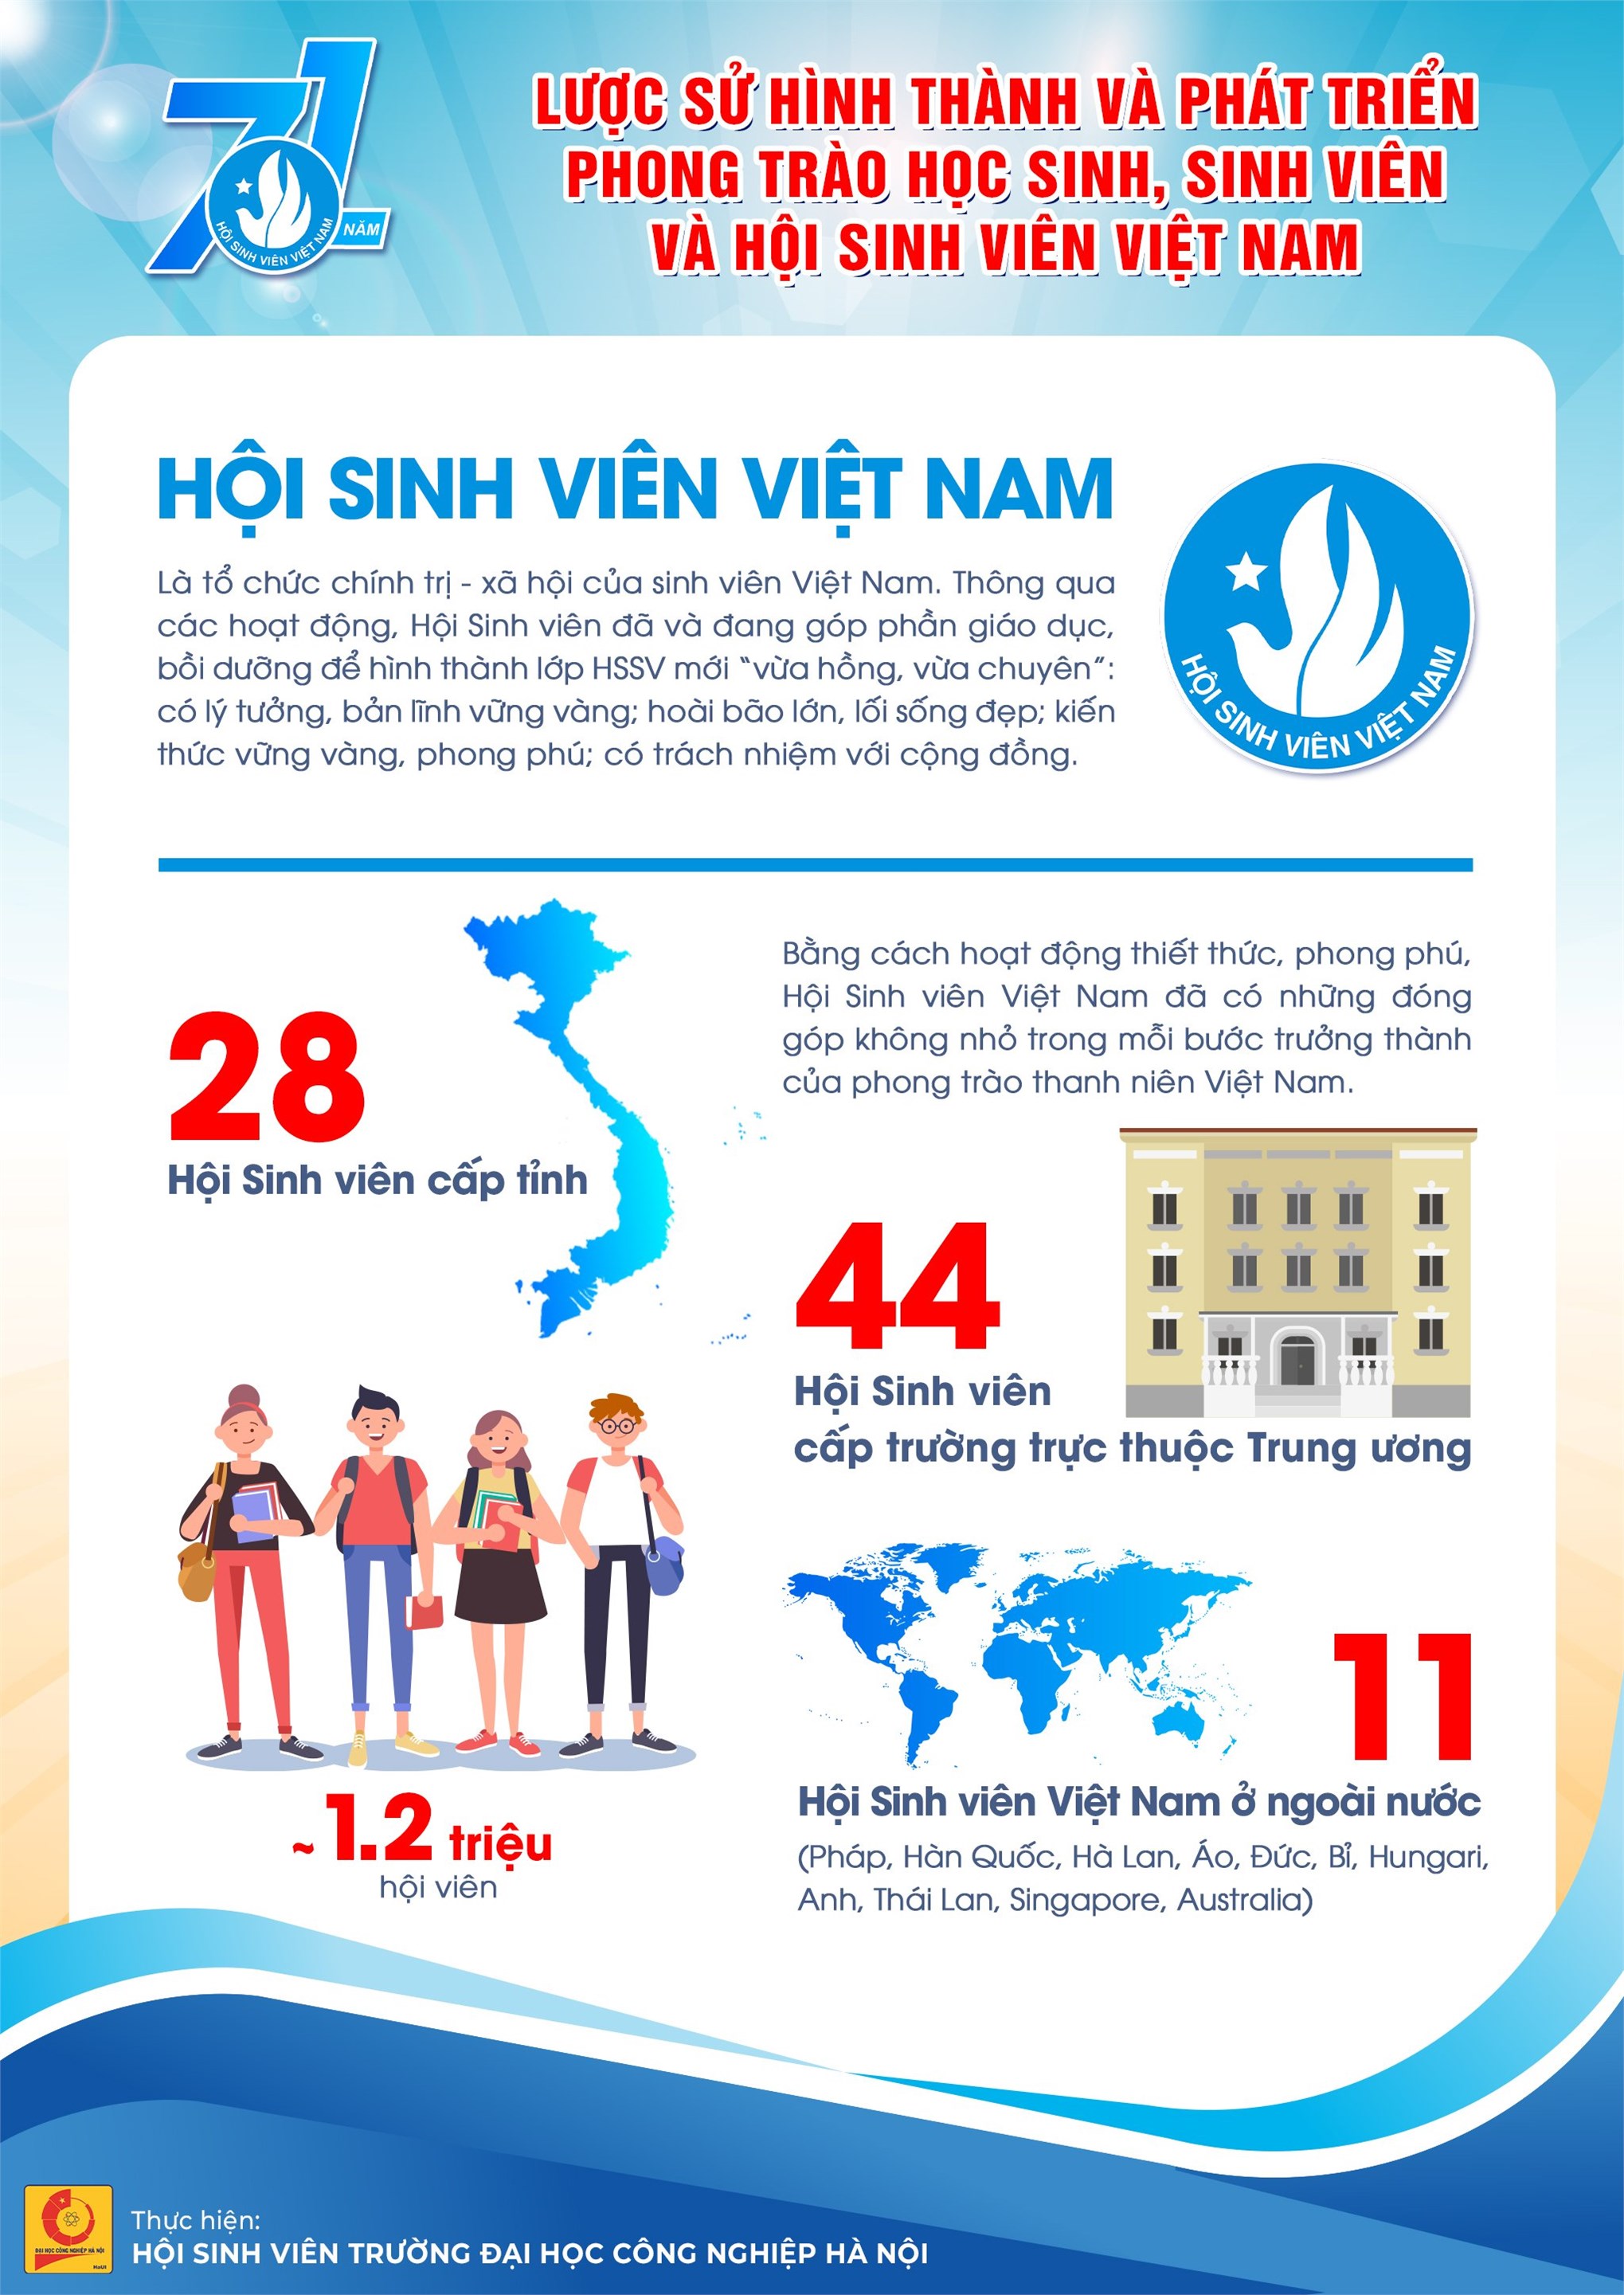 71 năm phát triển và trưởng thành của phong trào HSSV và Hội Sinh viên Việt Nam